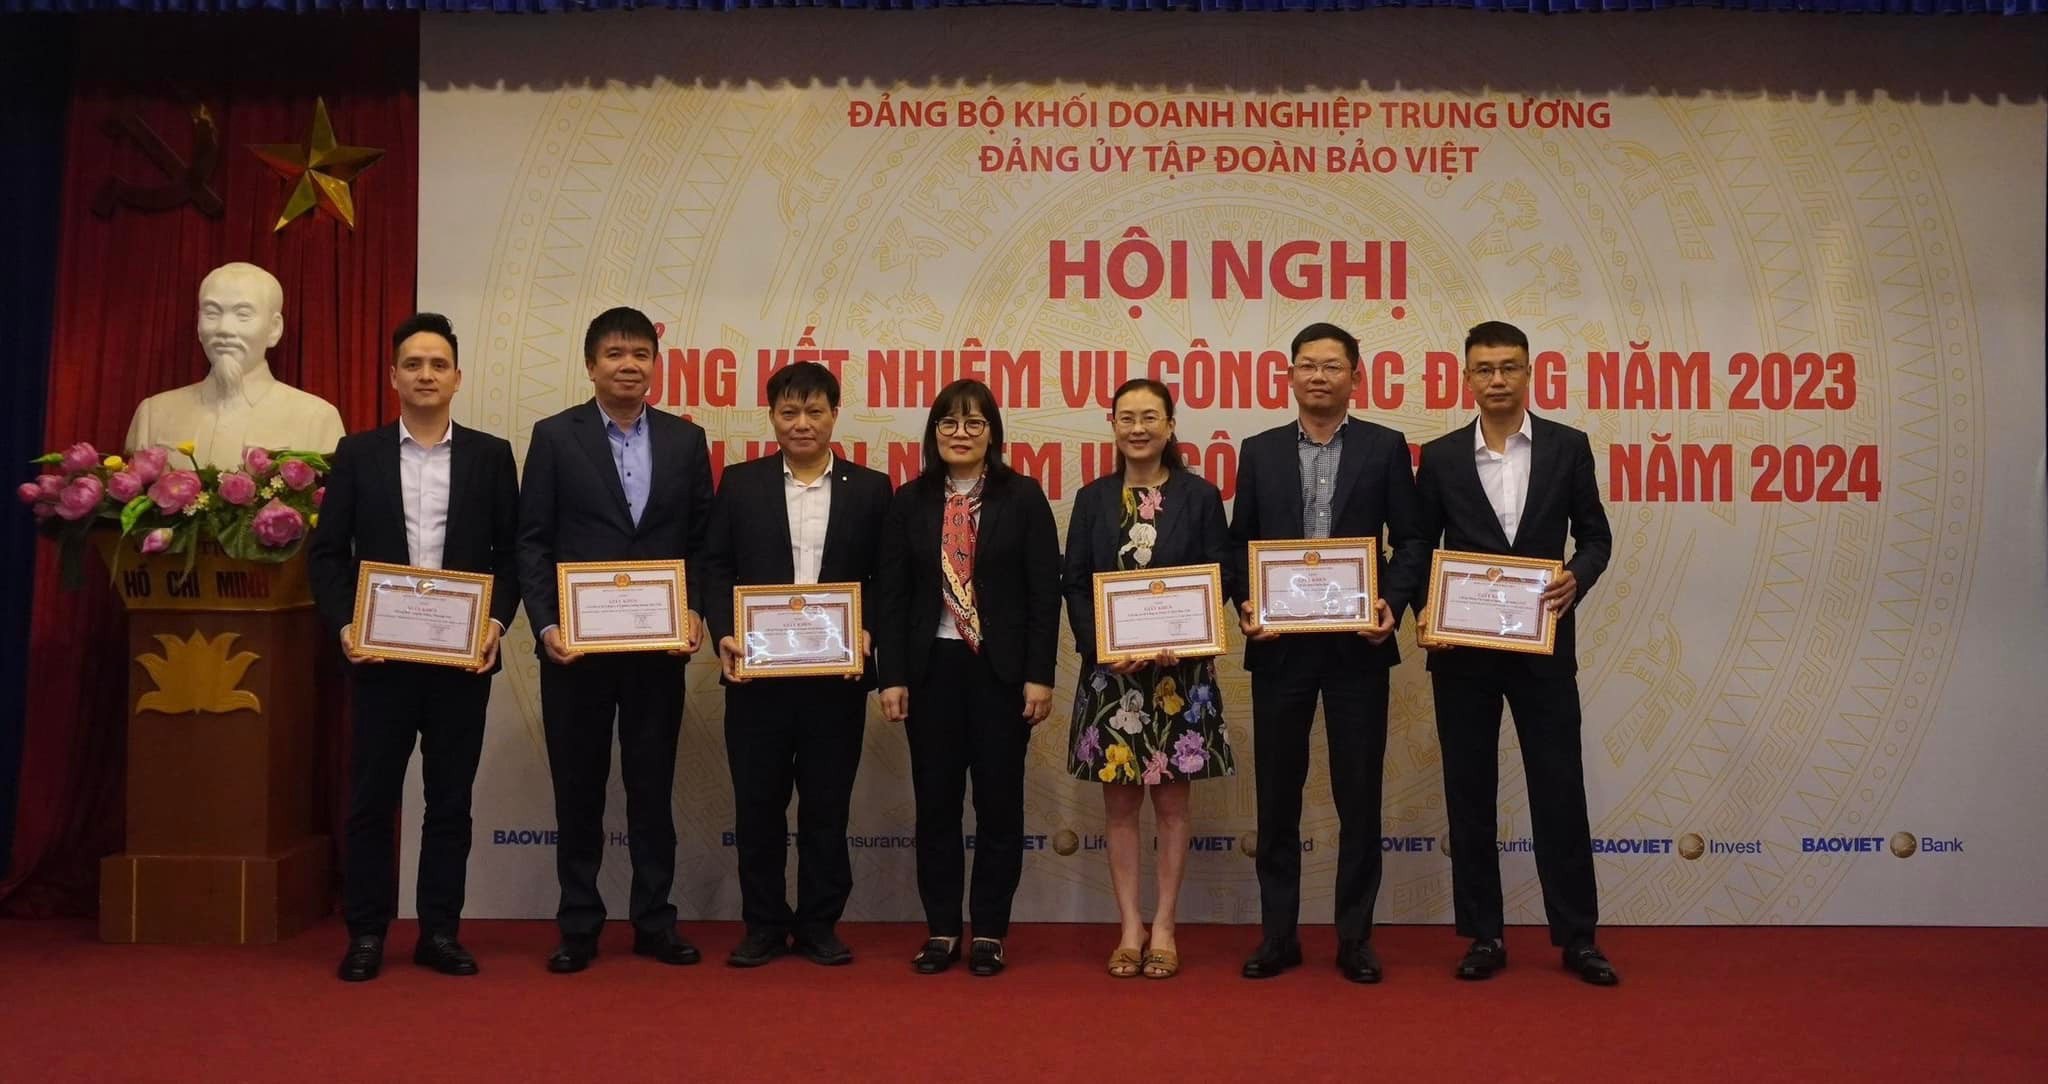 Đại diện lãnh đạo Đảng uỷ Tập đoàn Bảo Việt trao tặng Giấy khen cho các tổ chức đảng, đảng viên hoàn thành xuất sắc nhiệm vụ năm 2023.